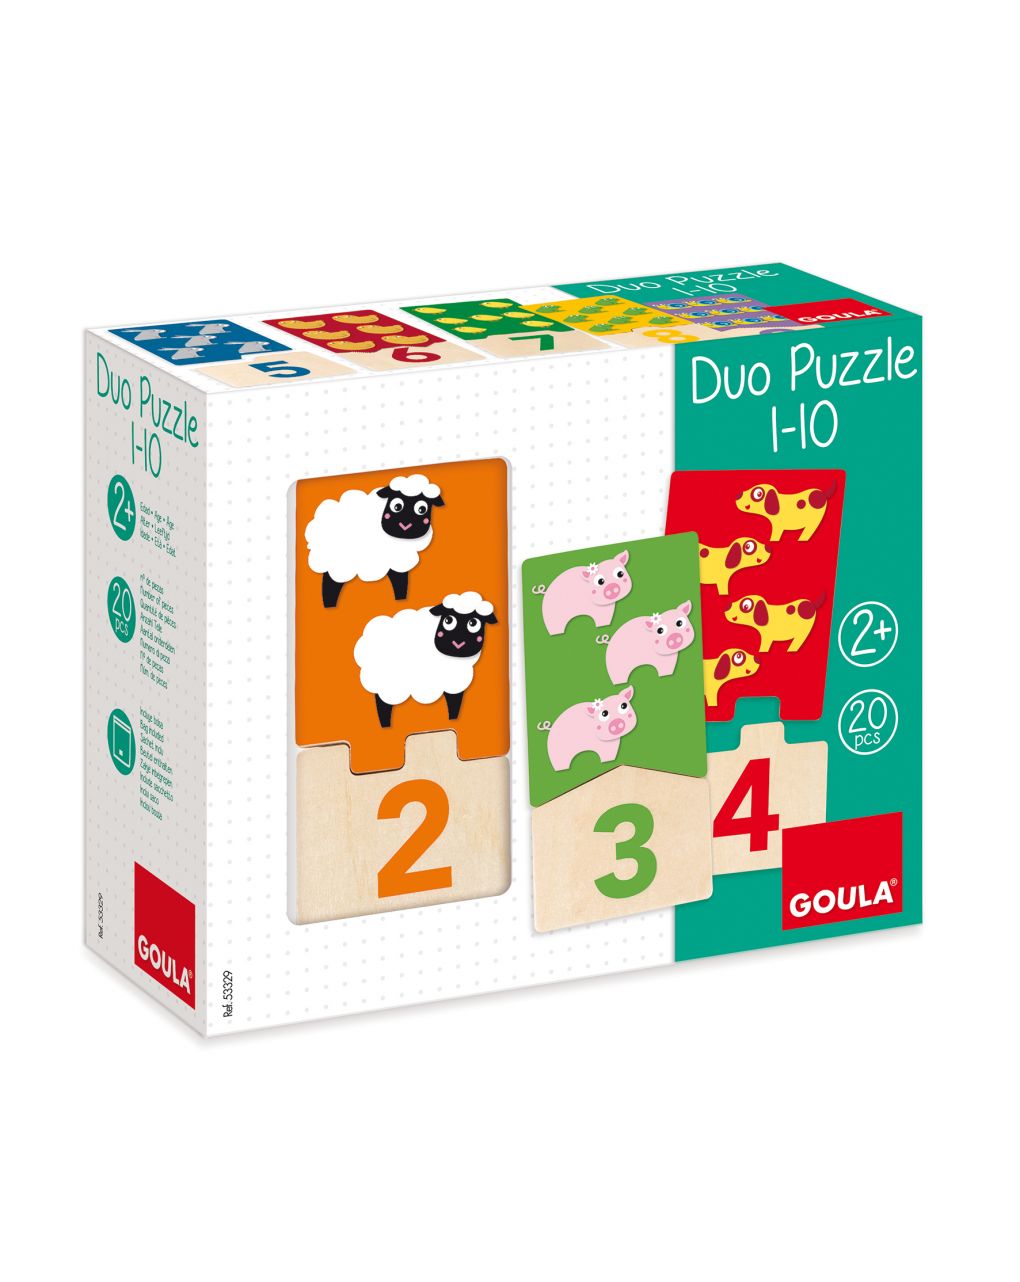 Duo puzzle 1-10 - goula - Goula